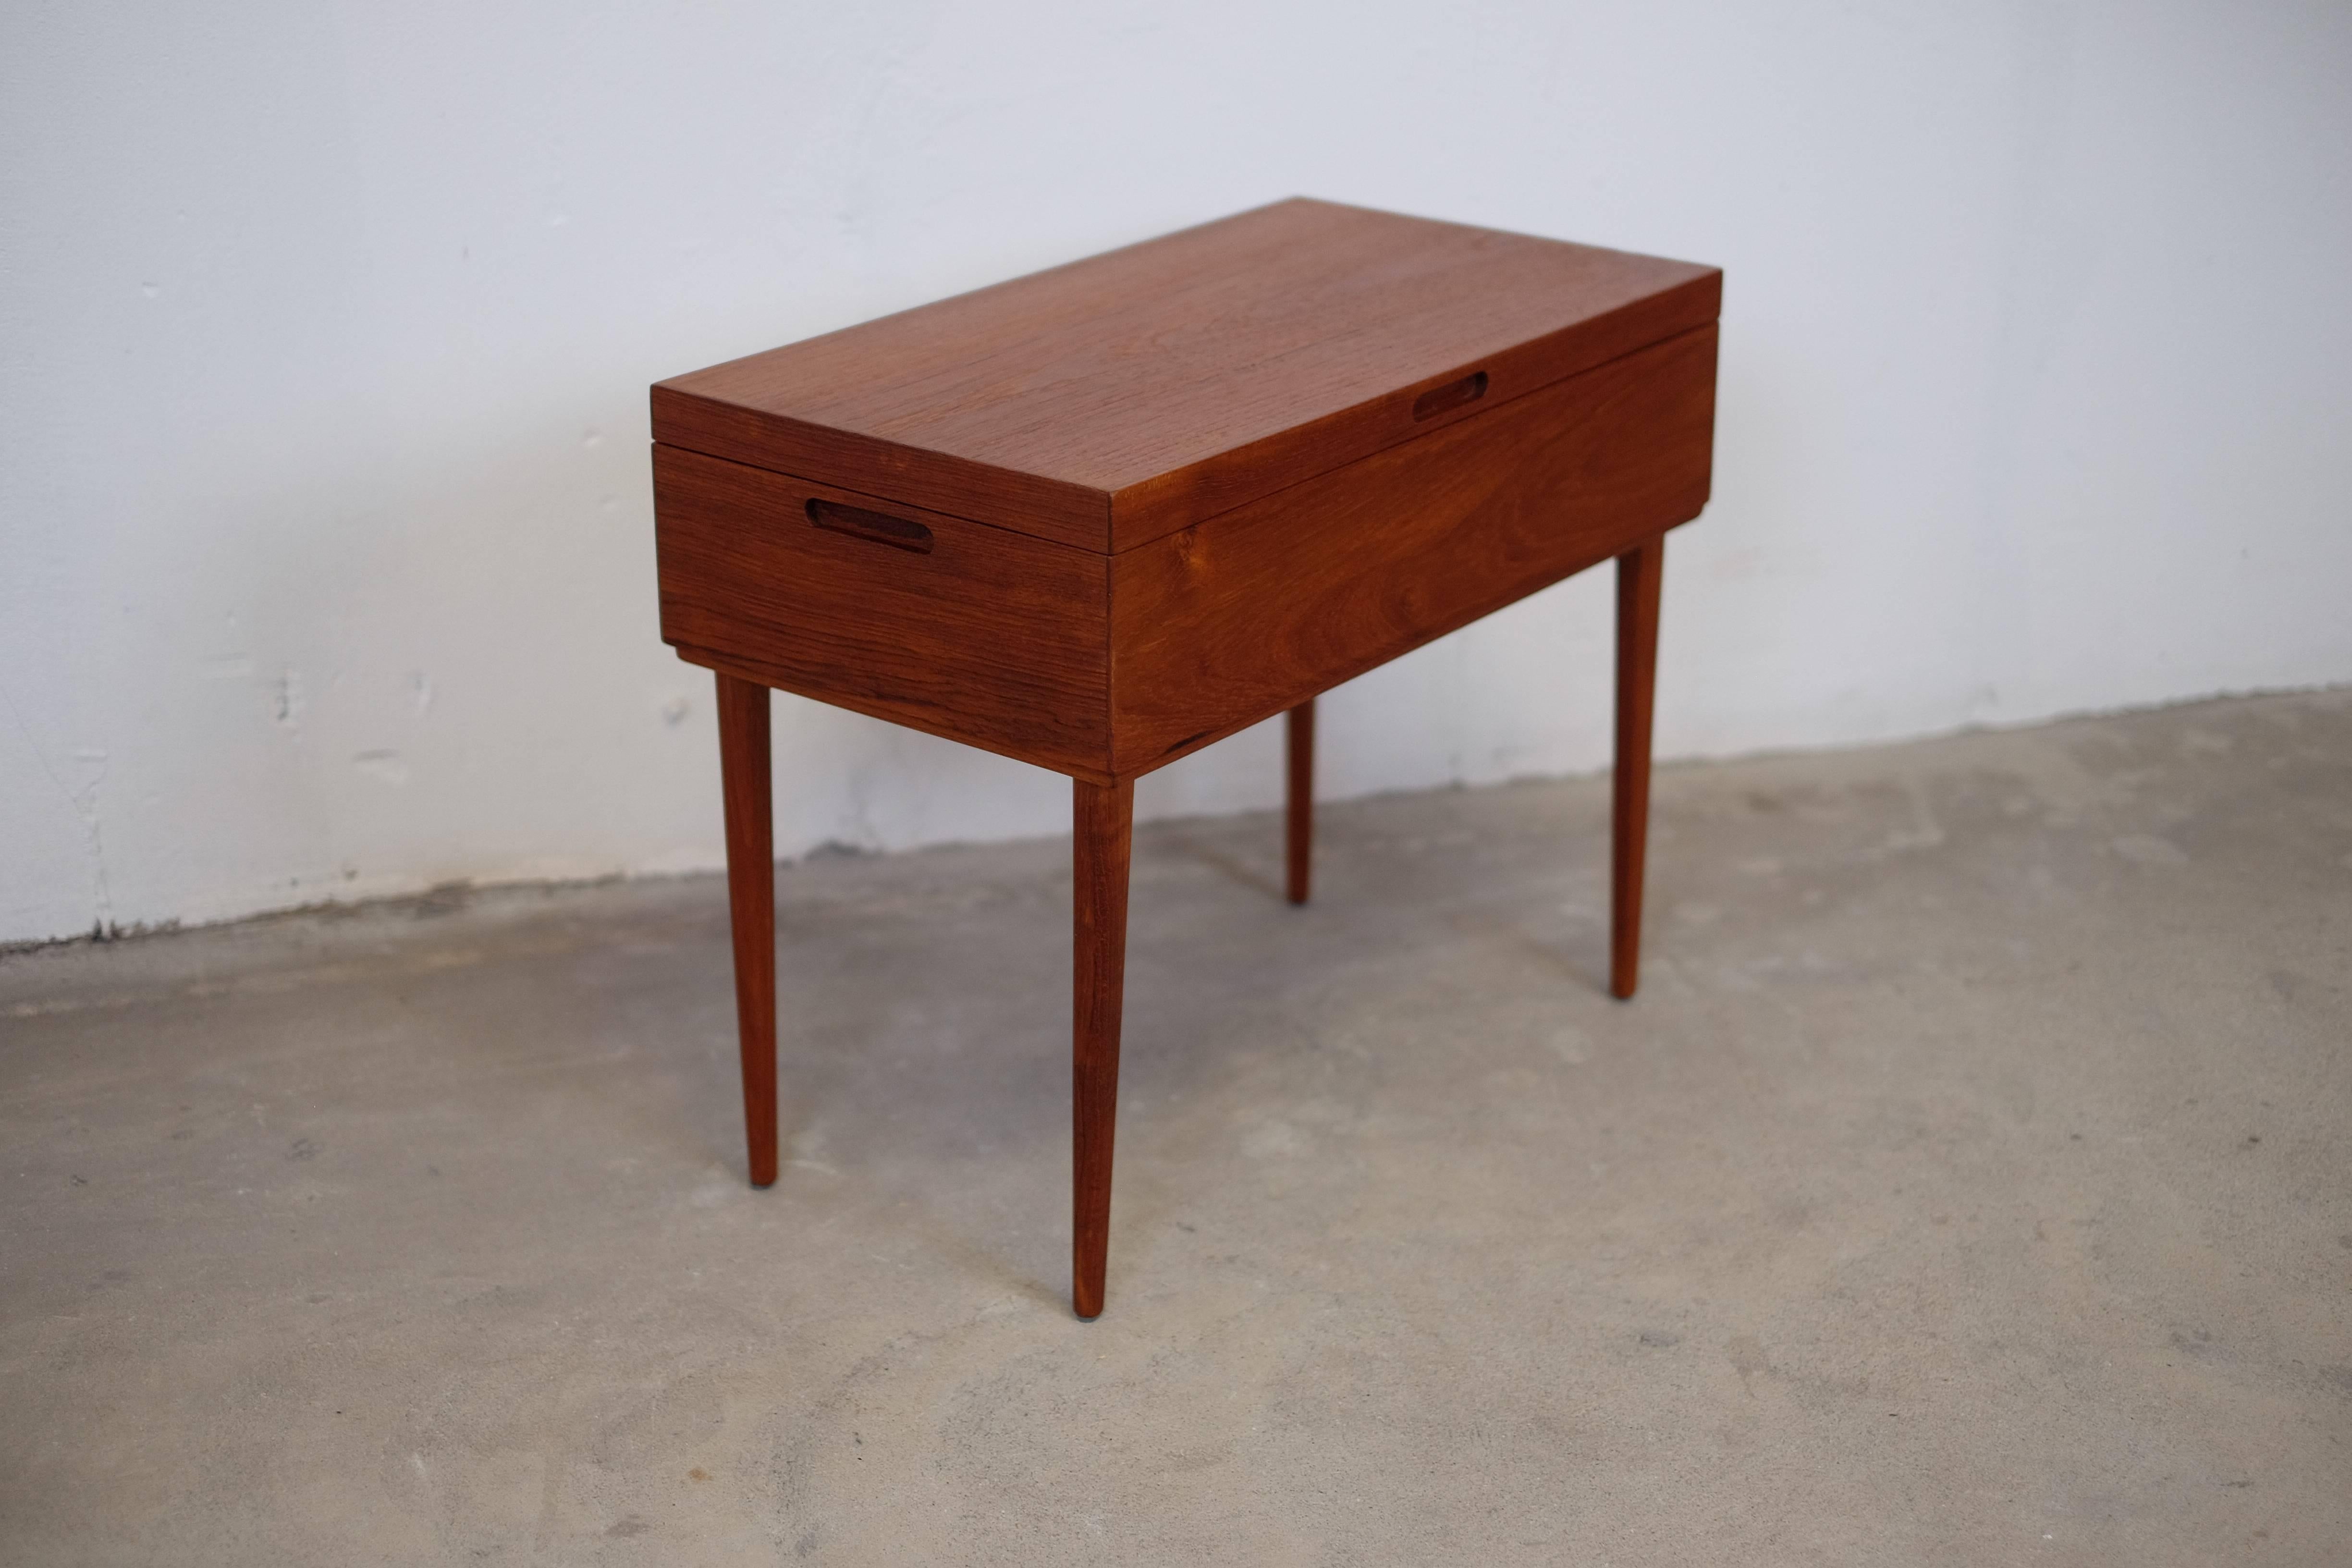 Mid-20th Century Elegant Sewing Table in Teak, Danish Design